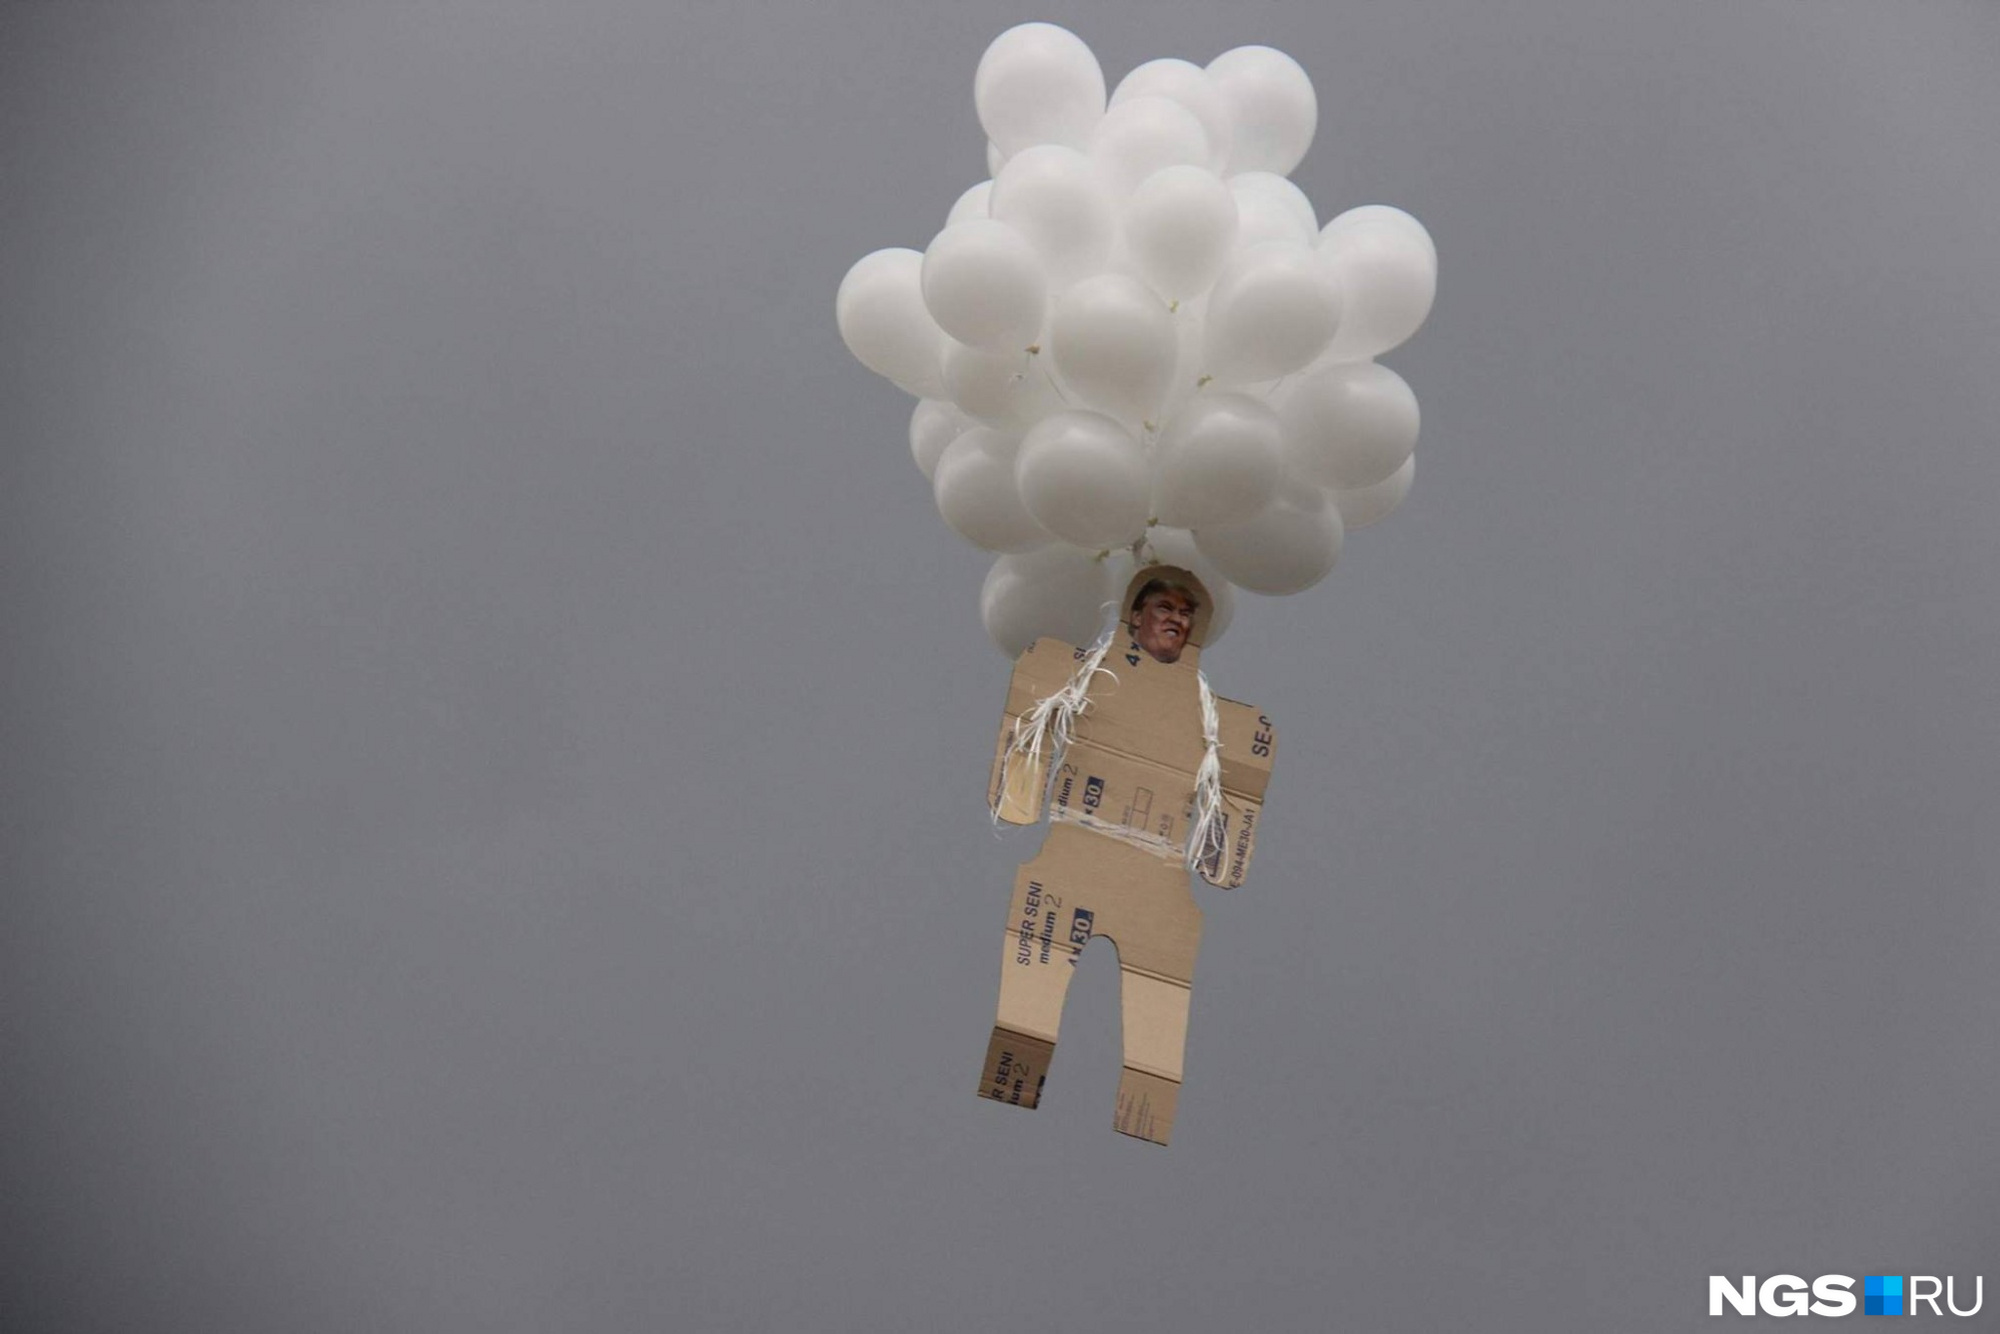 Фигура американского президента улетела в новосибирское небо на воздушных шарах. Фото Стаса Соколова 